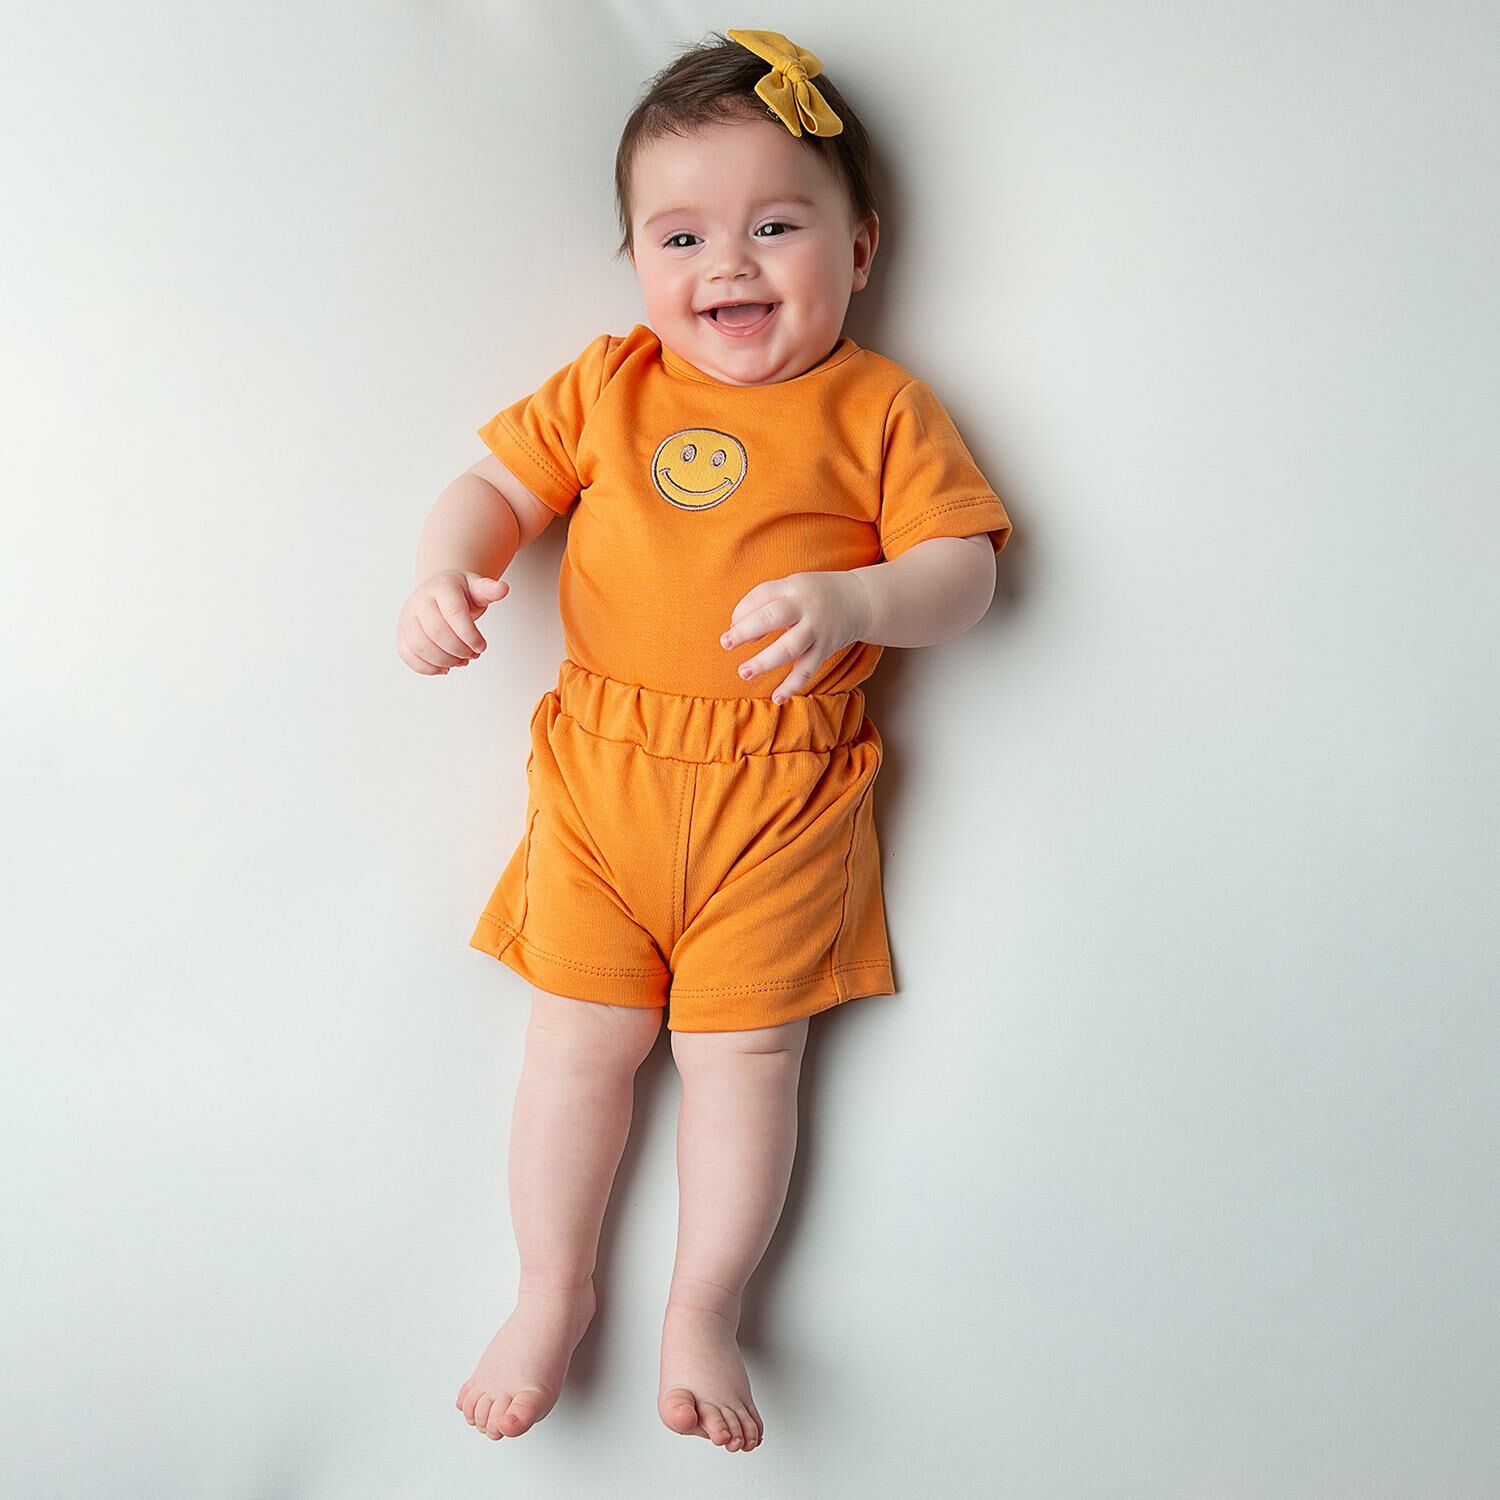 Gülen Yüz Nakışlı Bebek Şort Takımı Oranj - 3-6 Ay